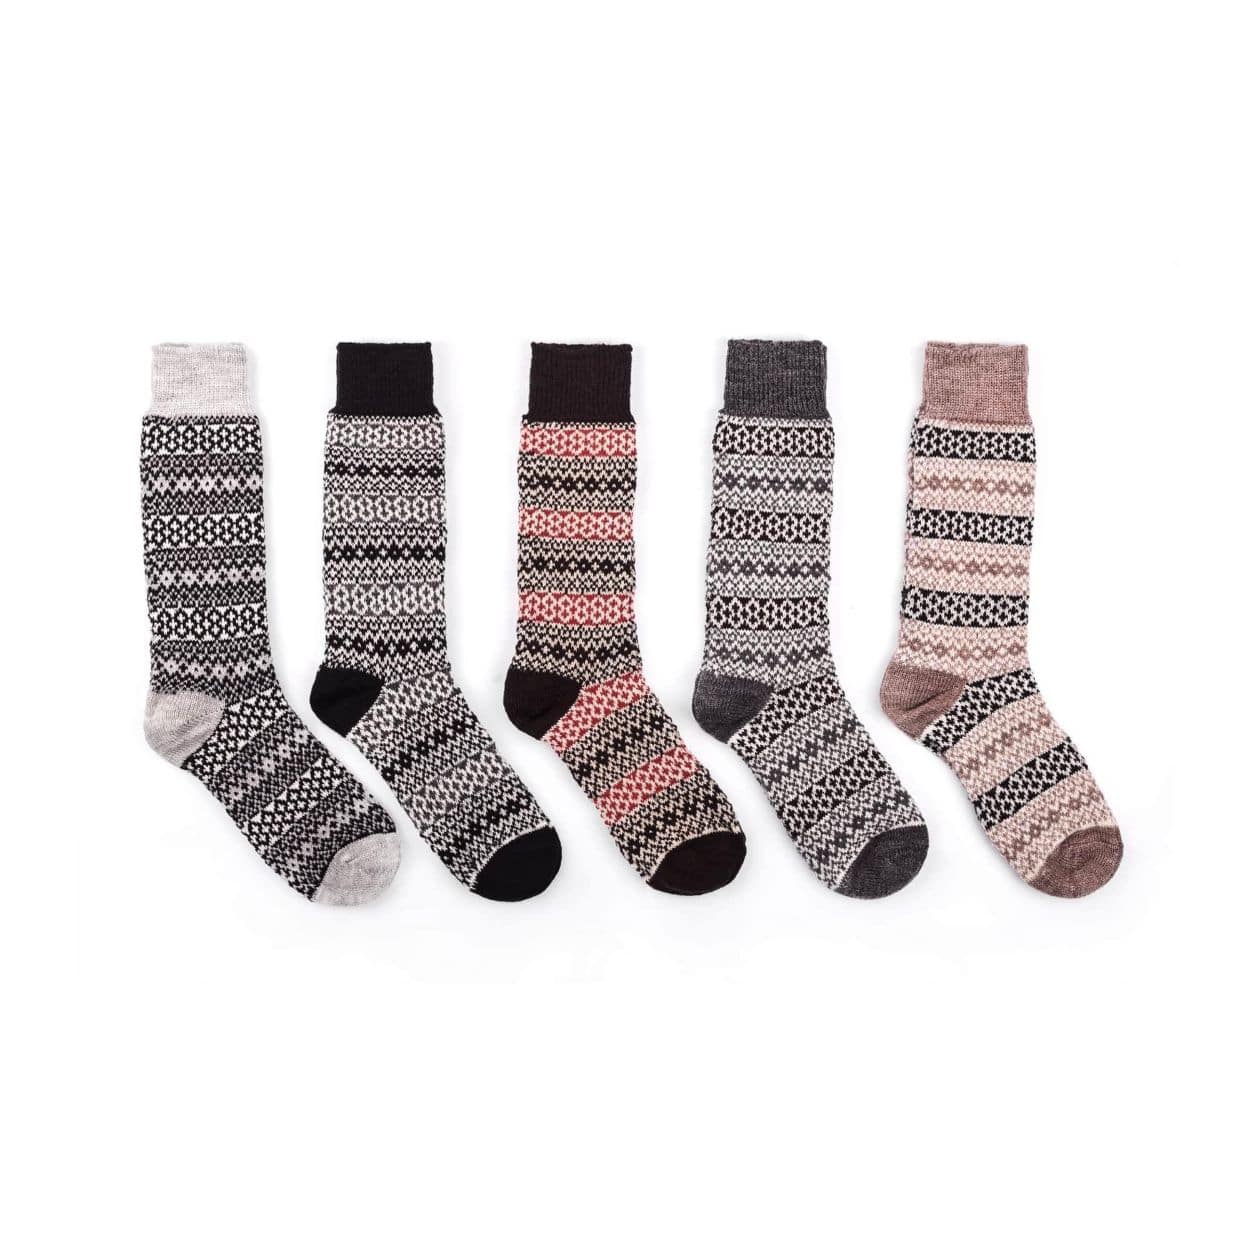 Nordic Wools Merino Torsten Socks (5 pairs) - Unisex scandinavian 